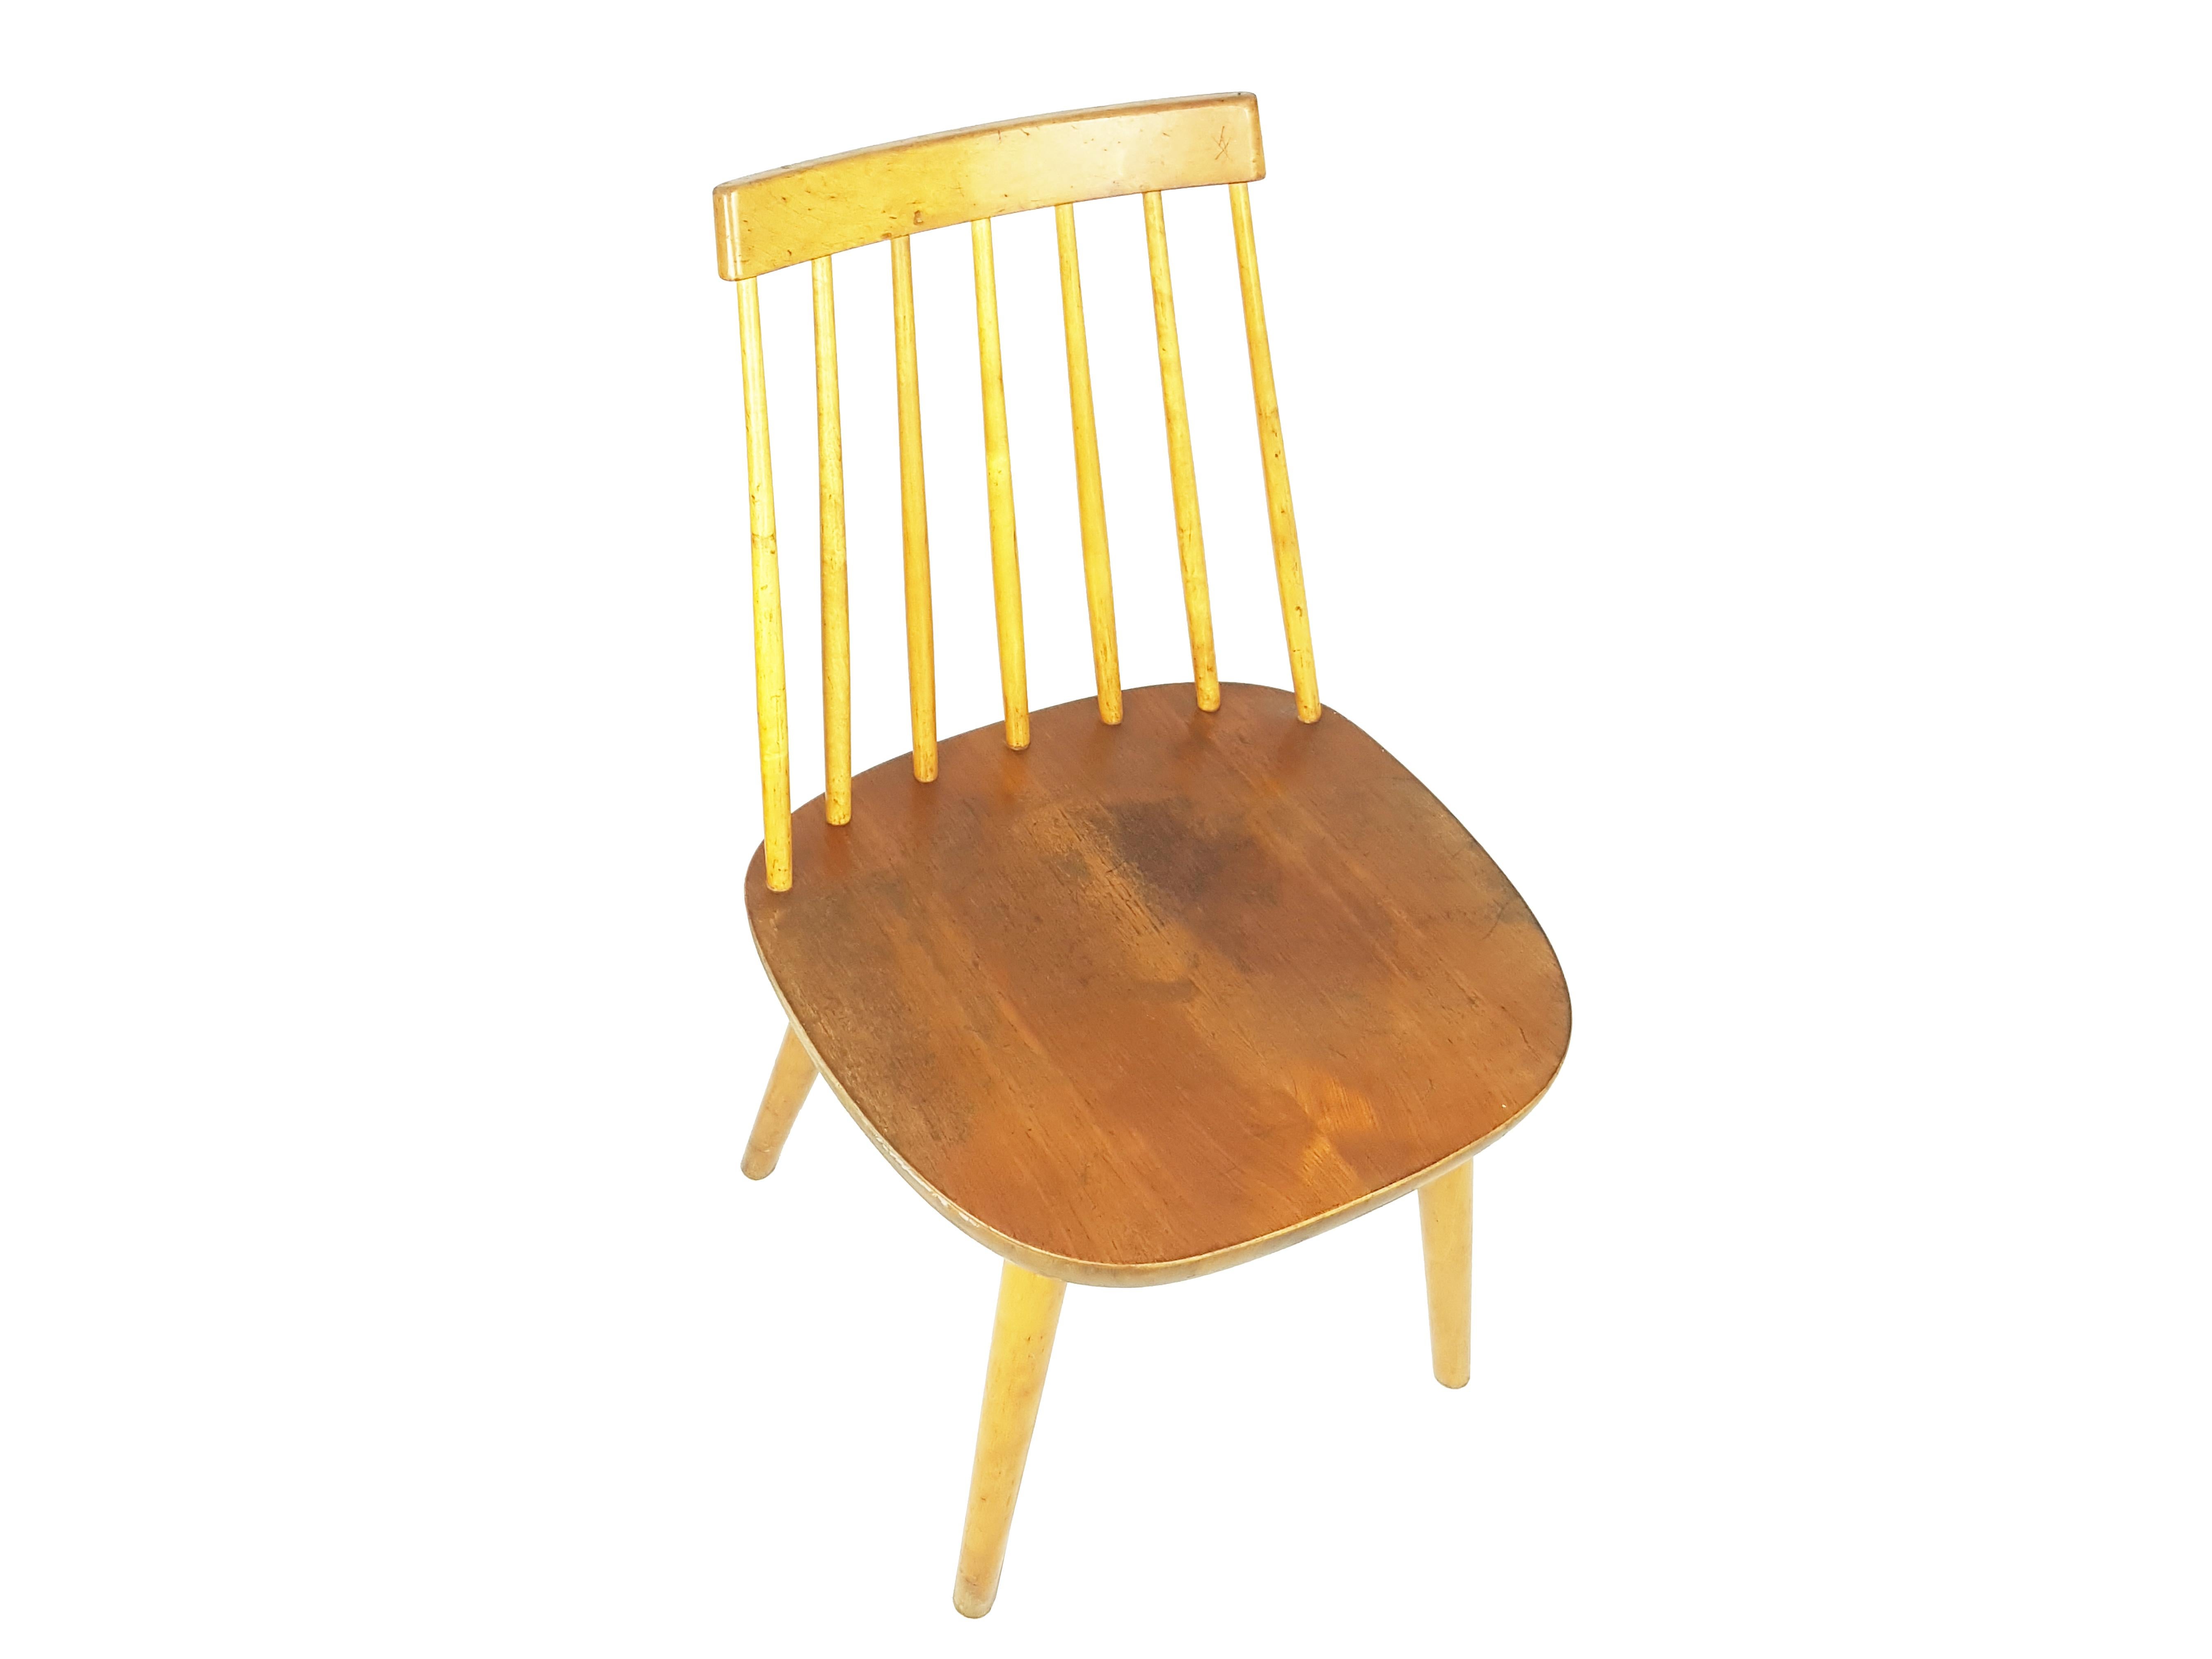 Chaise en bois fabriquée à Sveden dans les années 1950-60. Bon état vintage : signes visibles d'usure dus au temps et à l'utilisation.